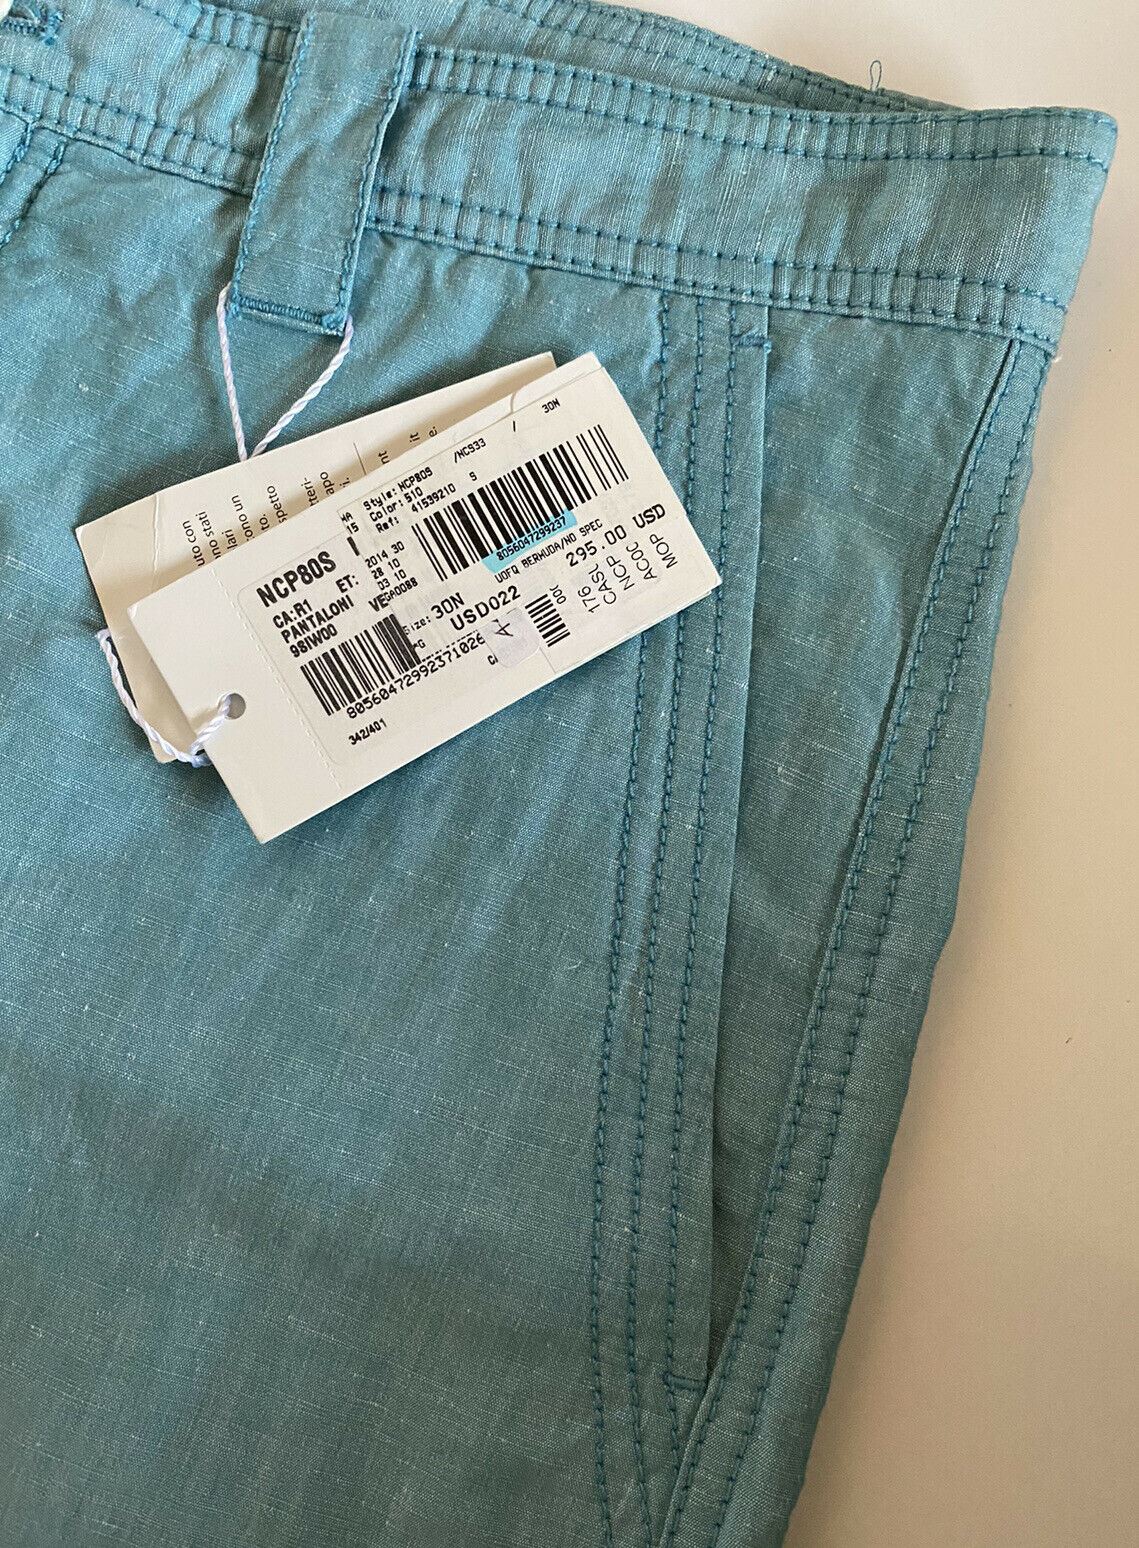 Neu mit Etikett: 295 $ Armani Collezioni Hellgrüne Shorts für Herren, Größe 30 US (46 Eu) NCP80S